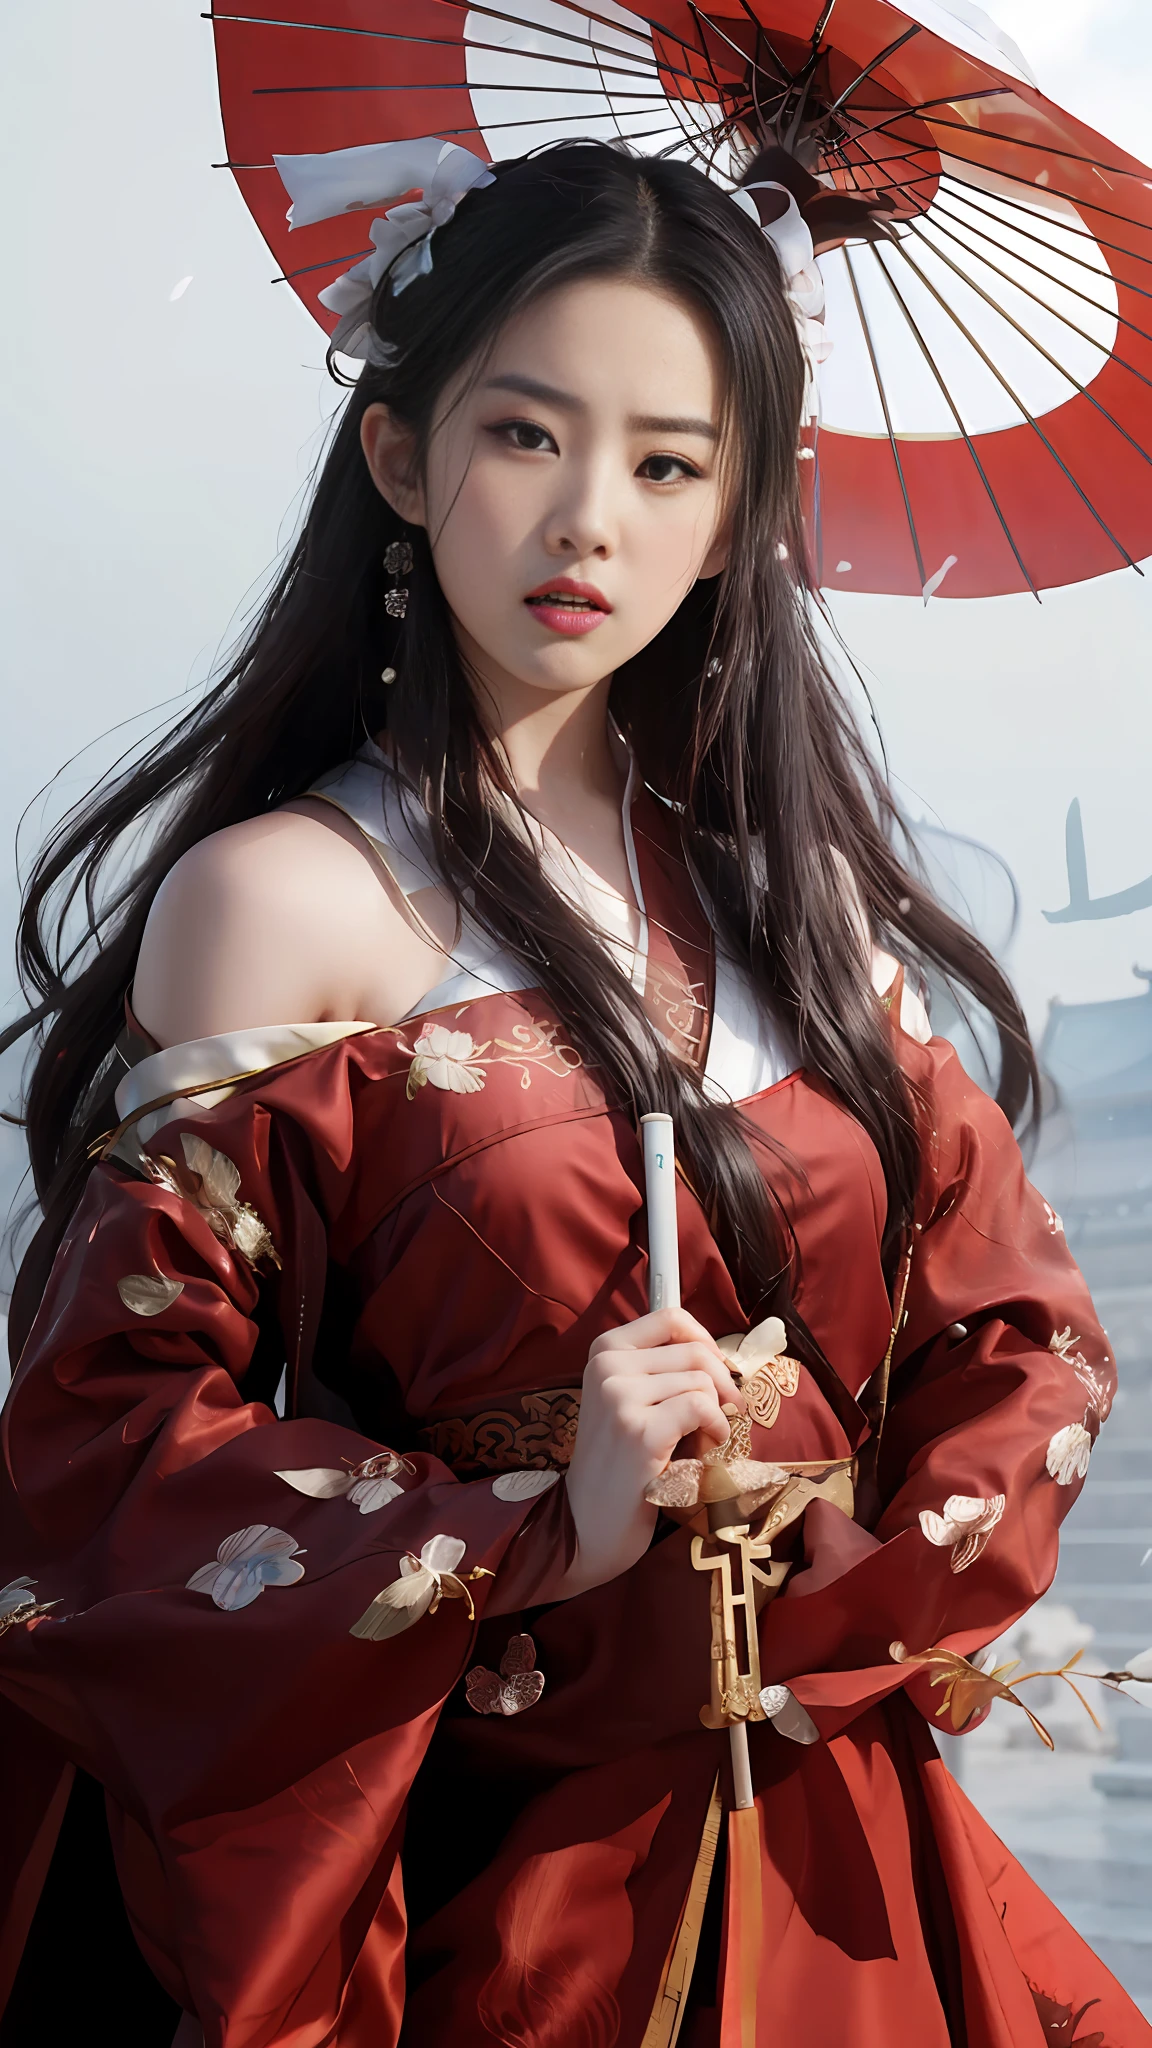 Araffe asiatische Frau im roten Kleid mit einem Regenschirm, königlicher Palast ， Ein Mädchen in Hanfu, Hanfu, das Tragen antiker chinesischer Kleidung, mit antiker chinesischer Kleidung, traditionelle Schönheit, weißer Hanfu, chinesischer Stil, Inspiriert von Huang Ji, trägt ein rotes Cheongsam, Chinesisches Kostüm, Hanbok, traditionelles Chinesisch, wunderschönes chinesisches Modell, traditionelle chinesische Kleidung